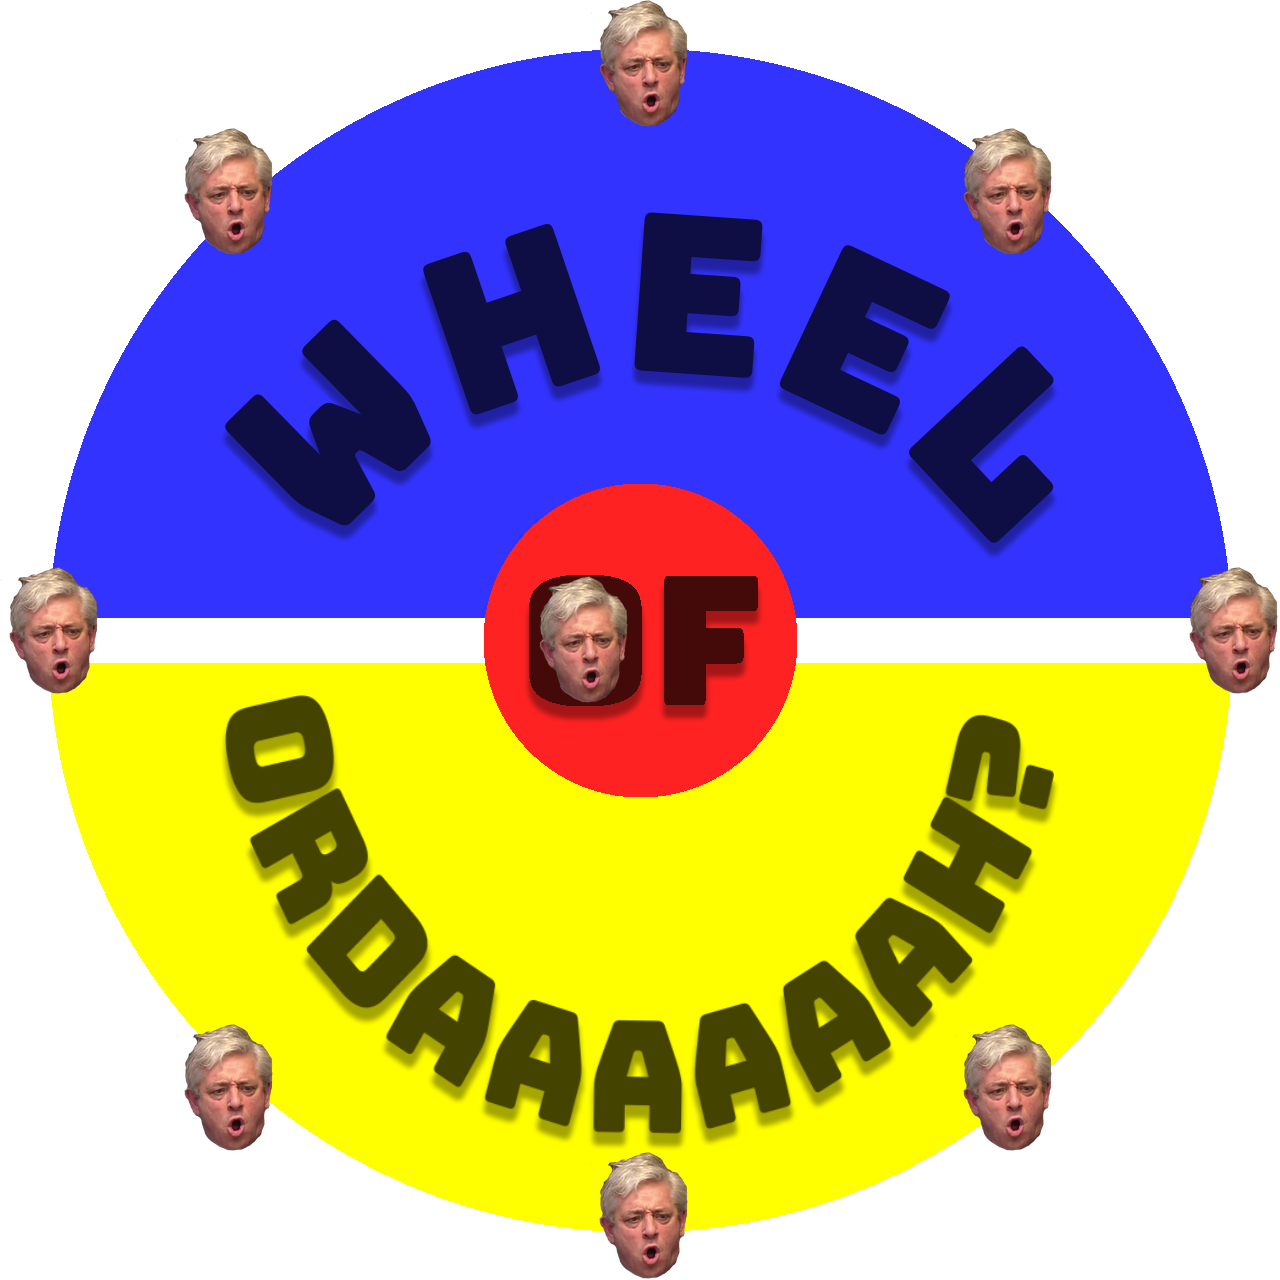 Wheel of ORDAAAAAAAAAAAAHHHH?